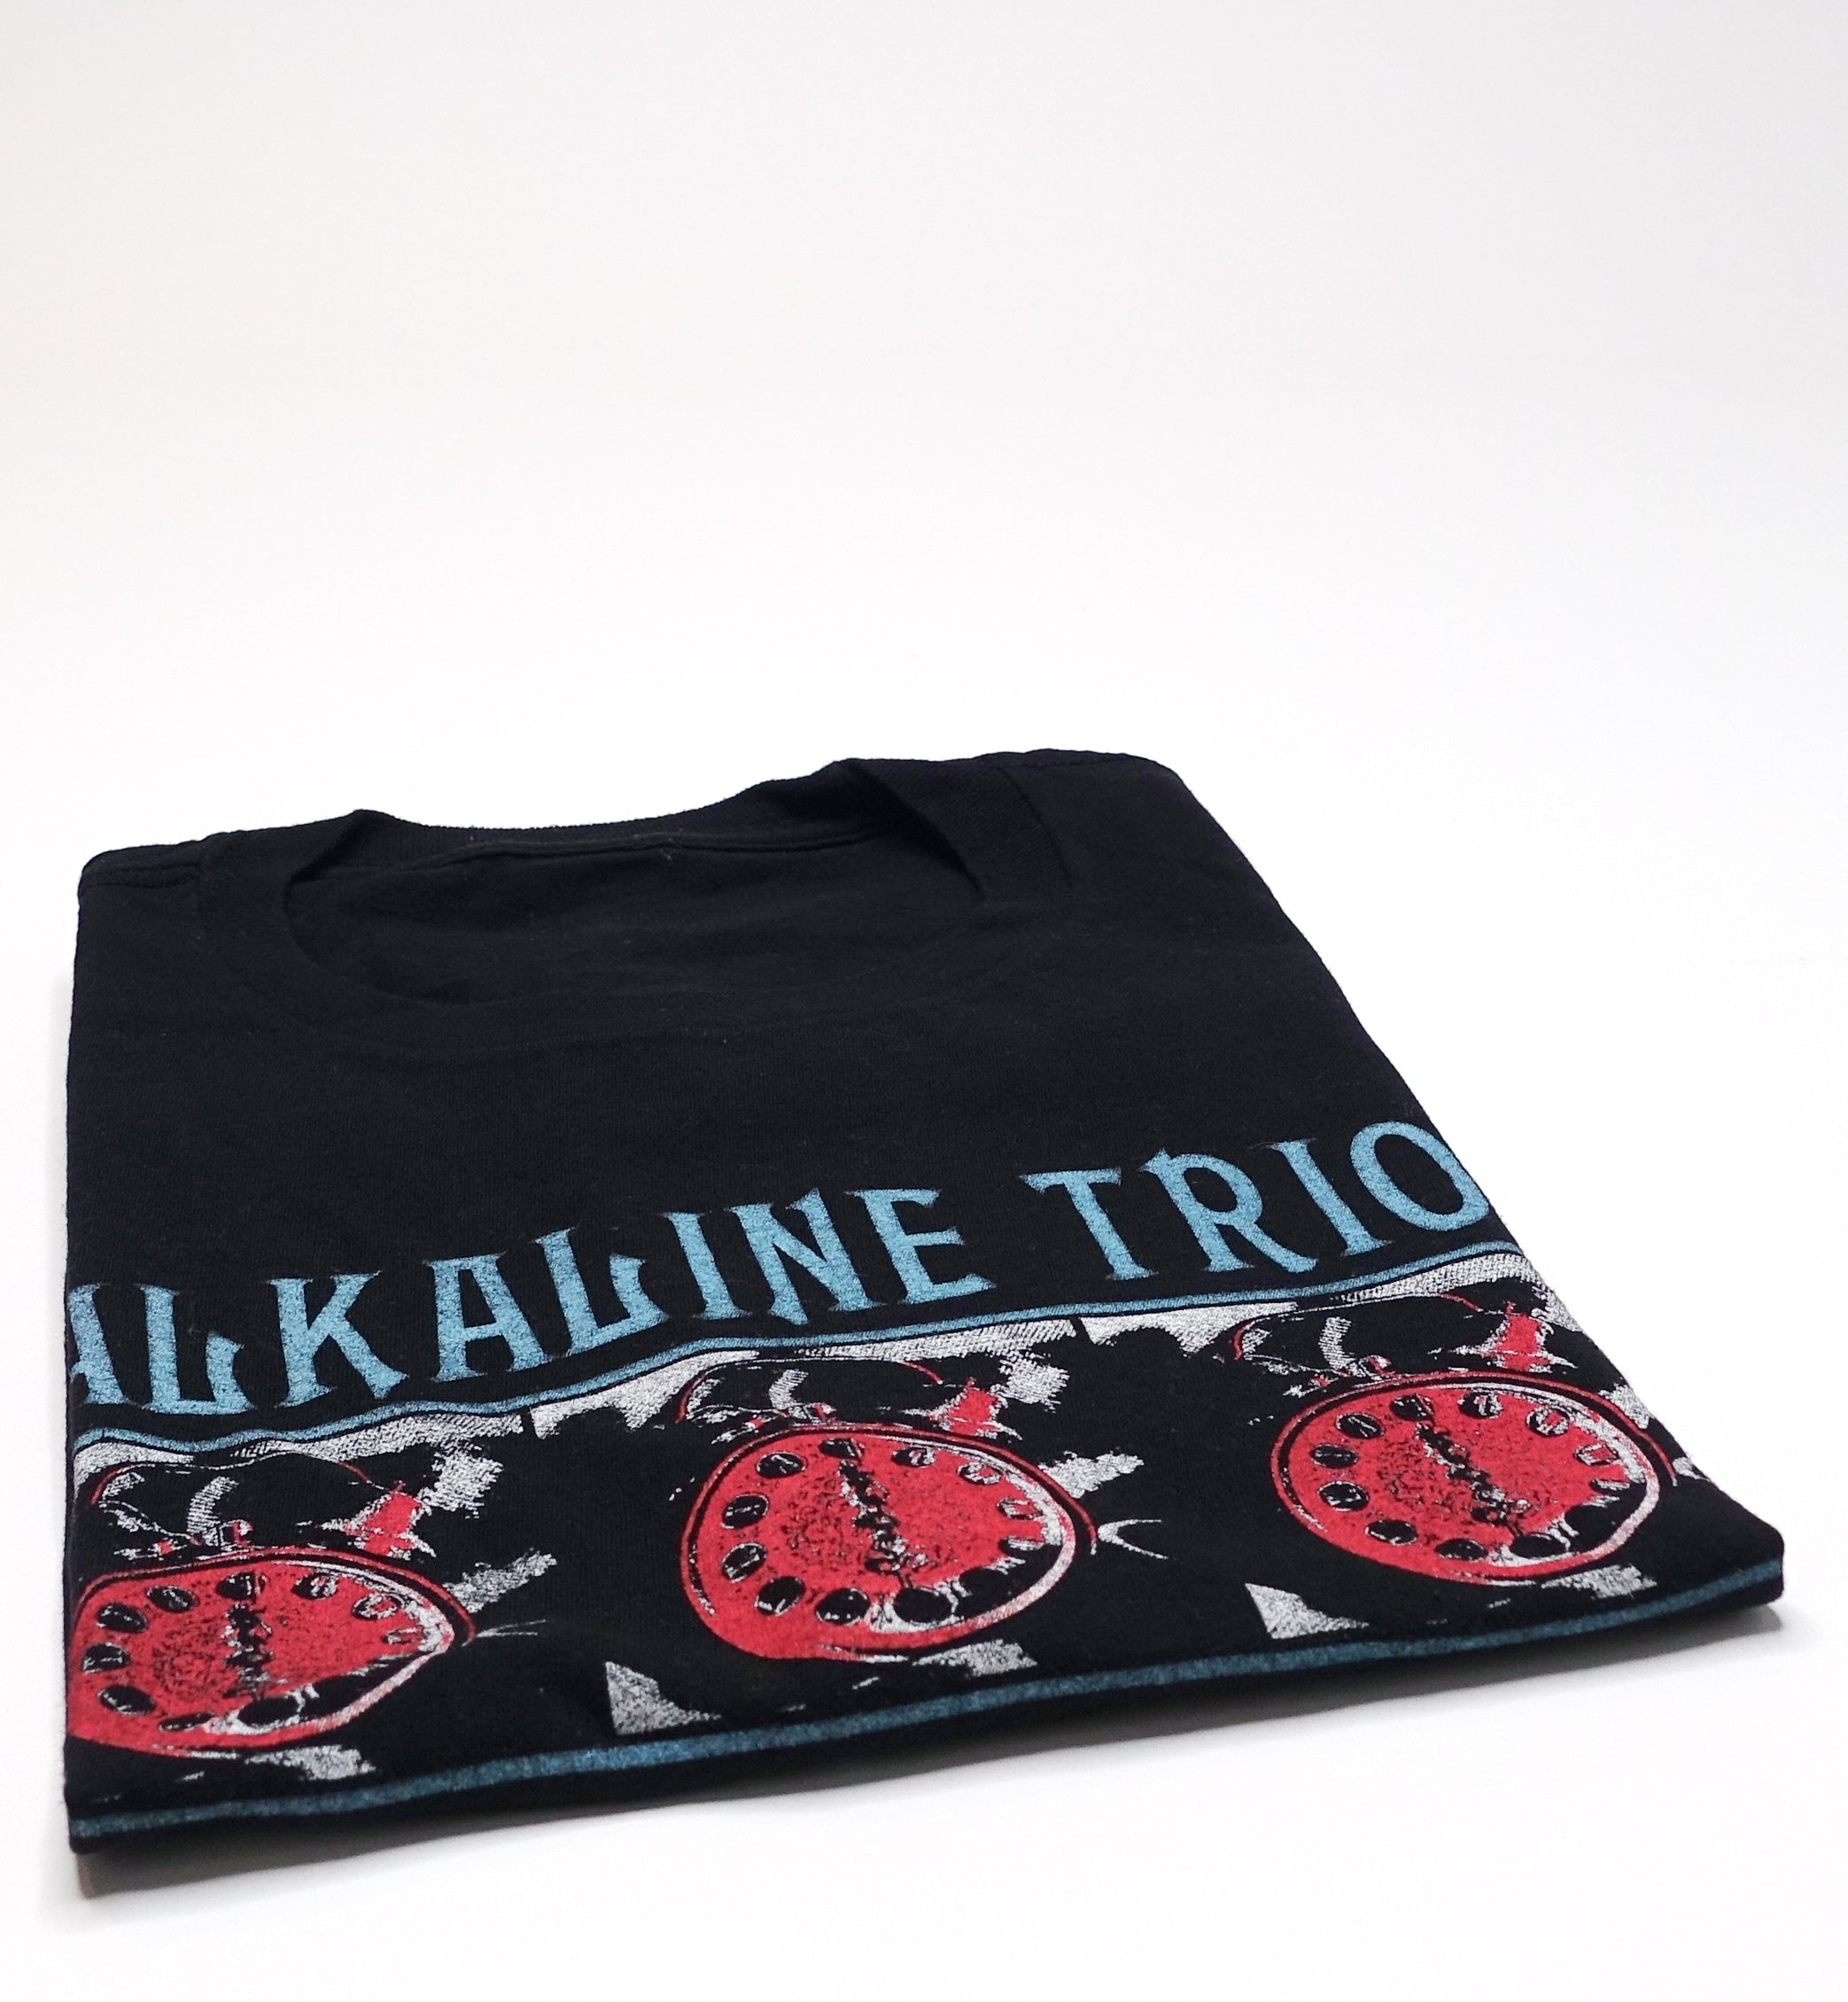 Alkaline Trio – Goddammit Shirt Size Large